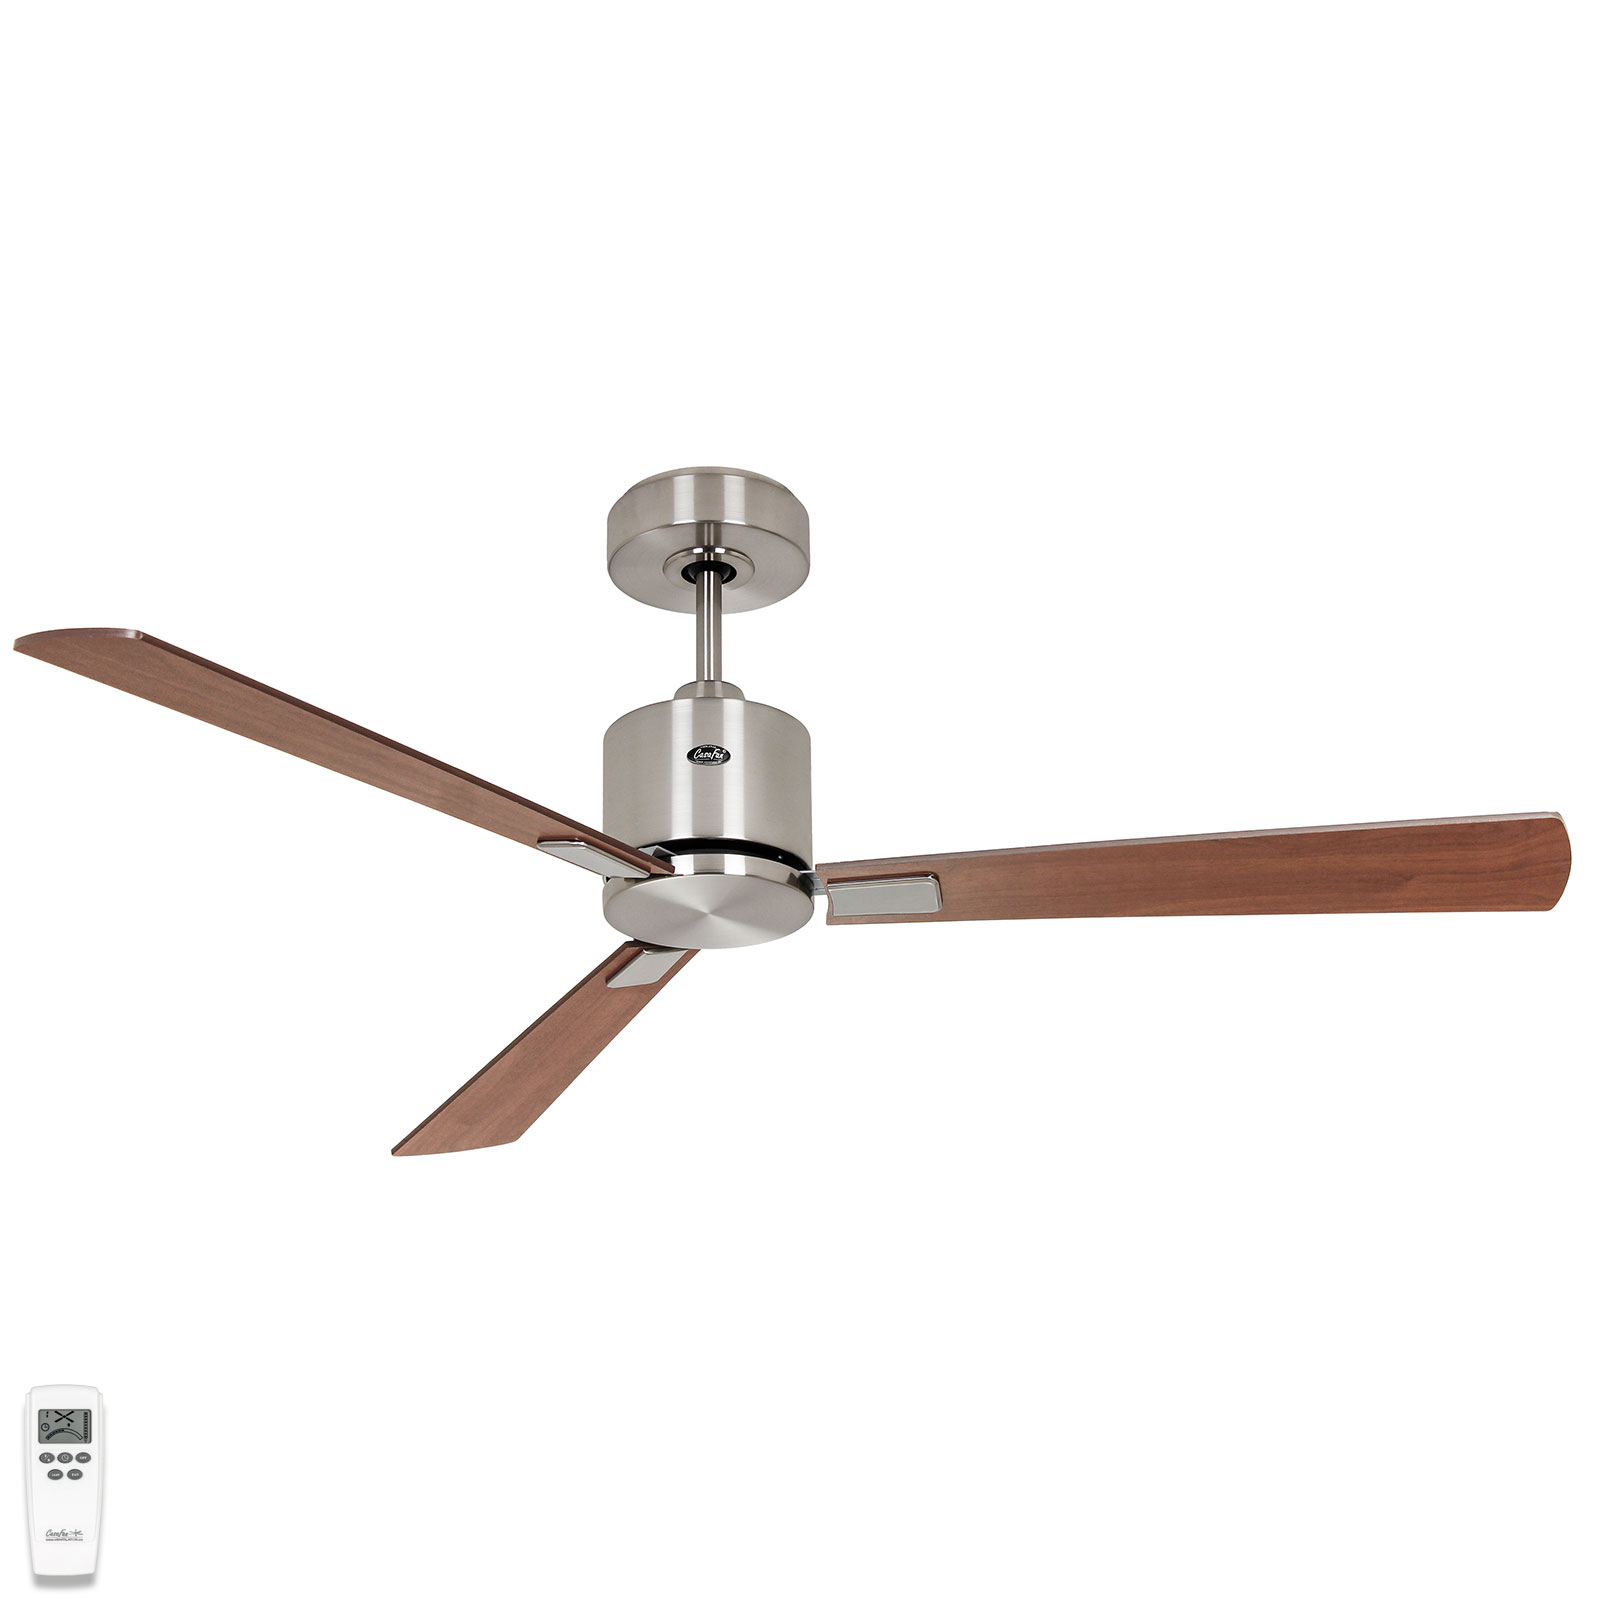 Eco Concept ceiling fan 132 cm chrome/wood